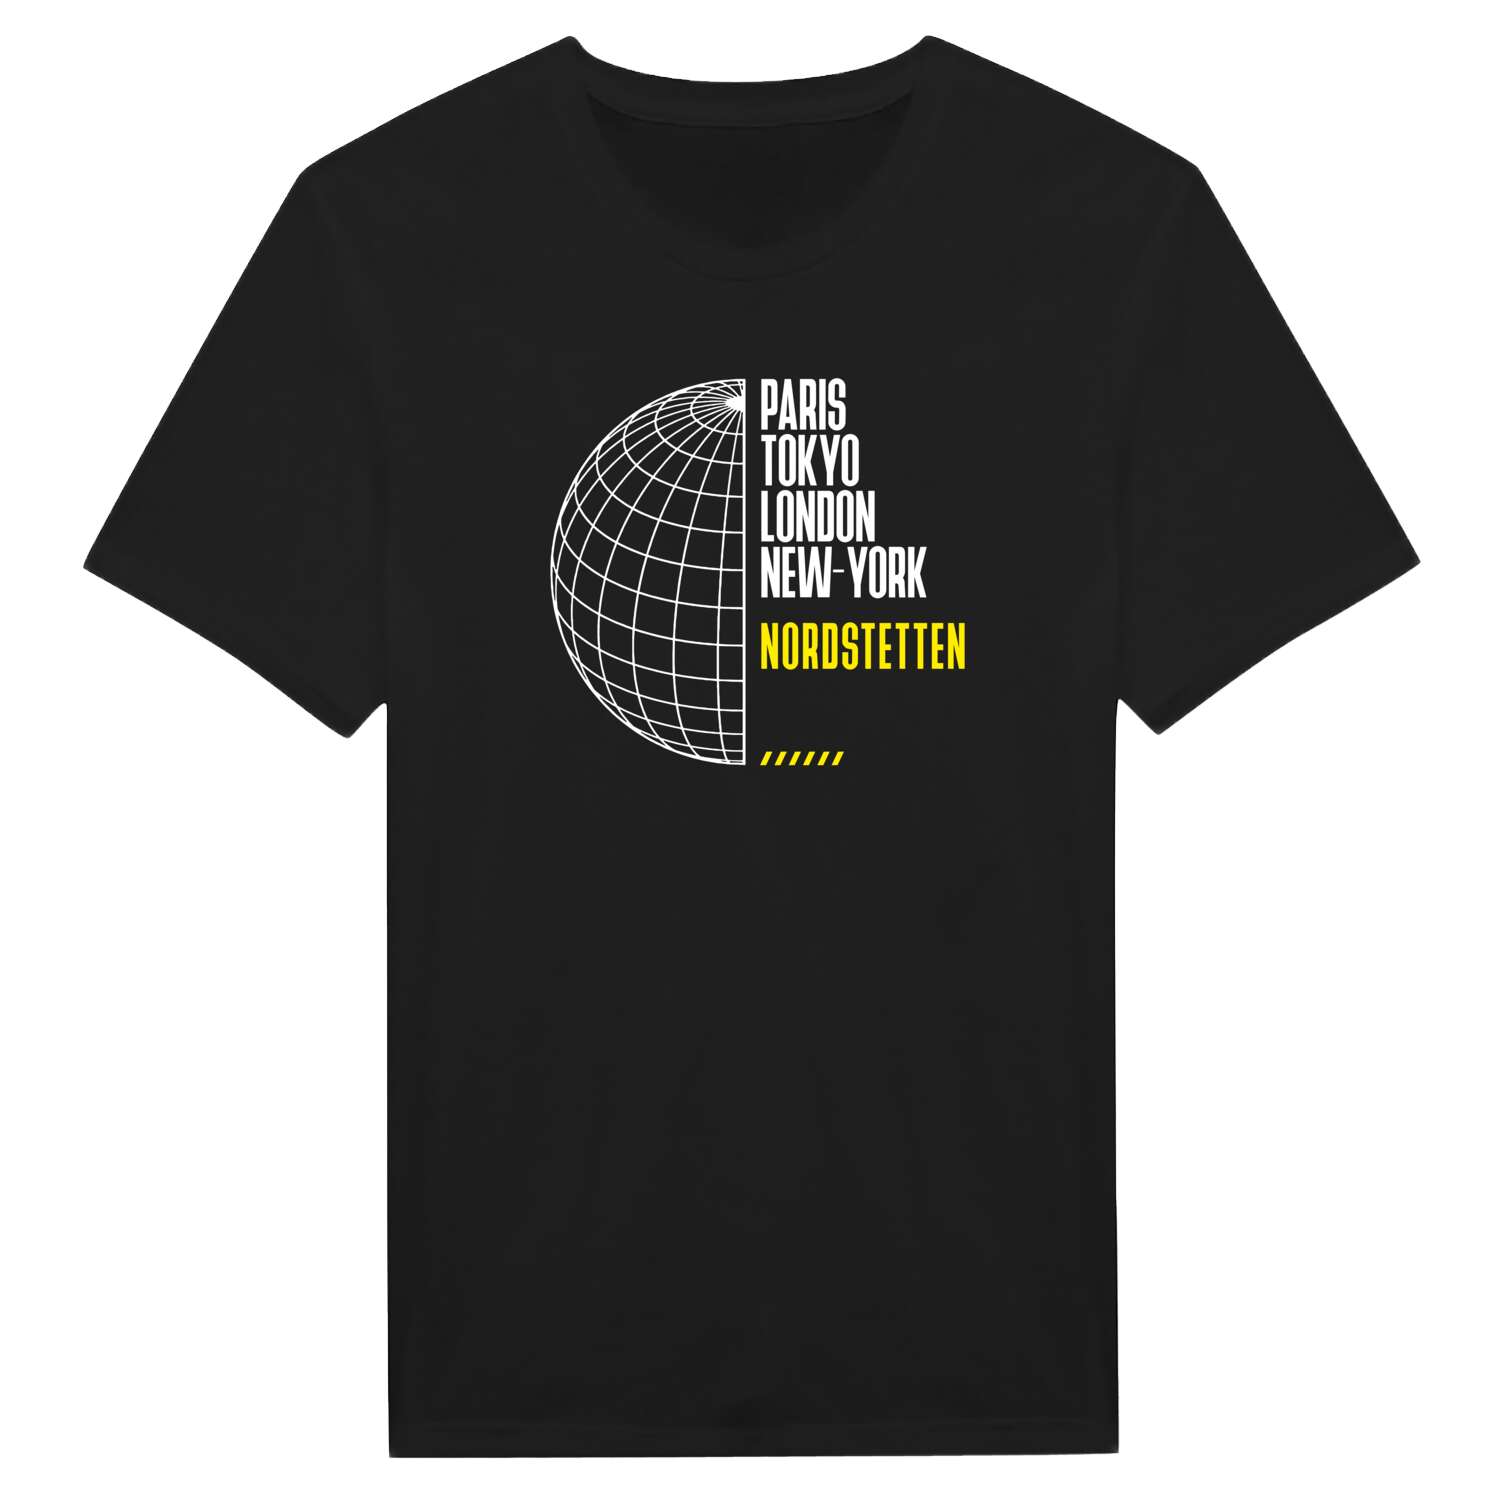 Nordstetten T-Shirt »Paris Tokyo London«